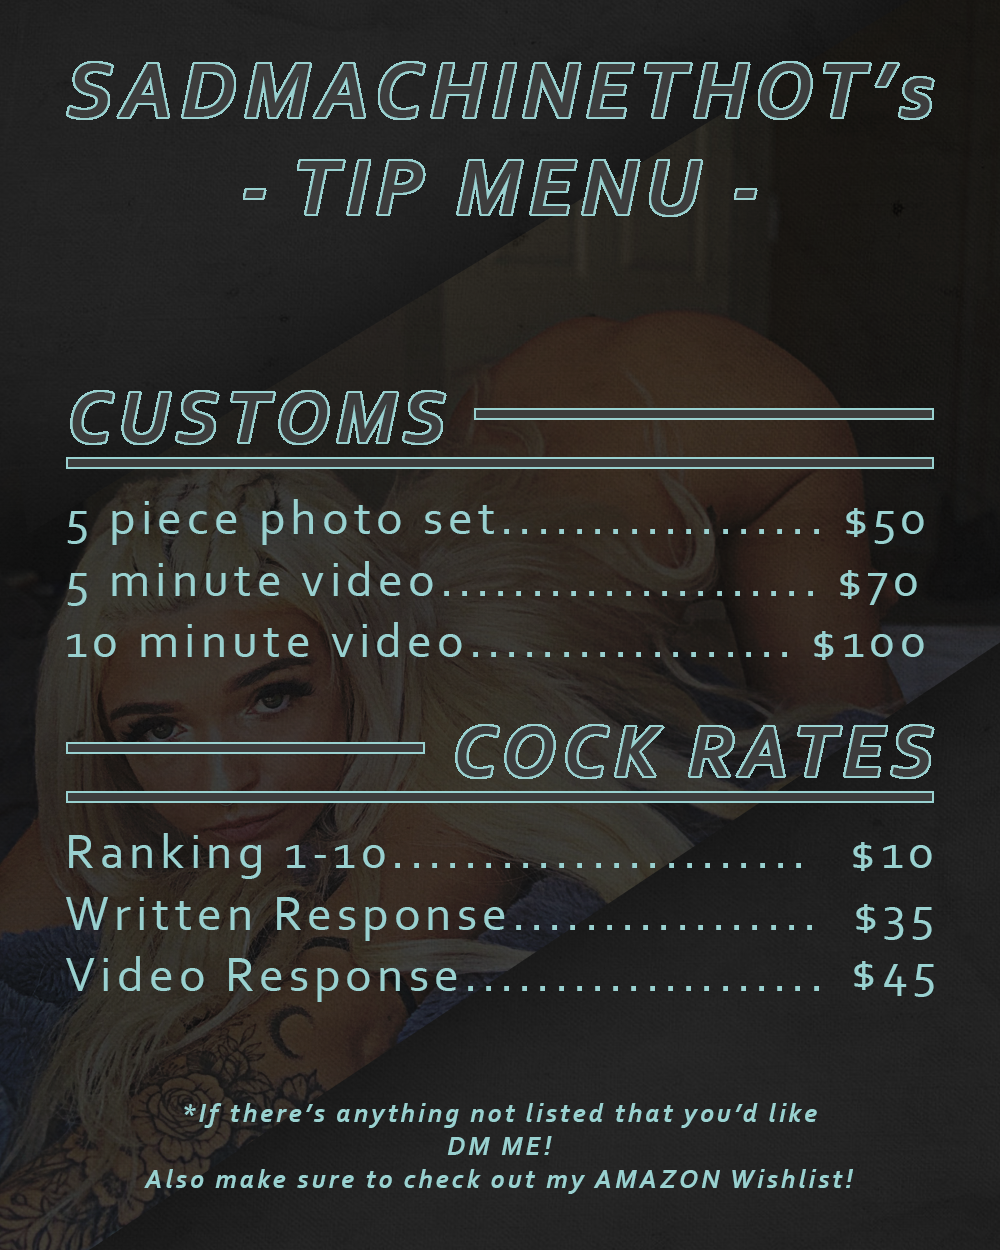 Tip menu only fans